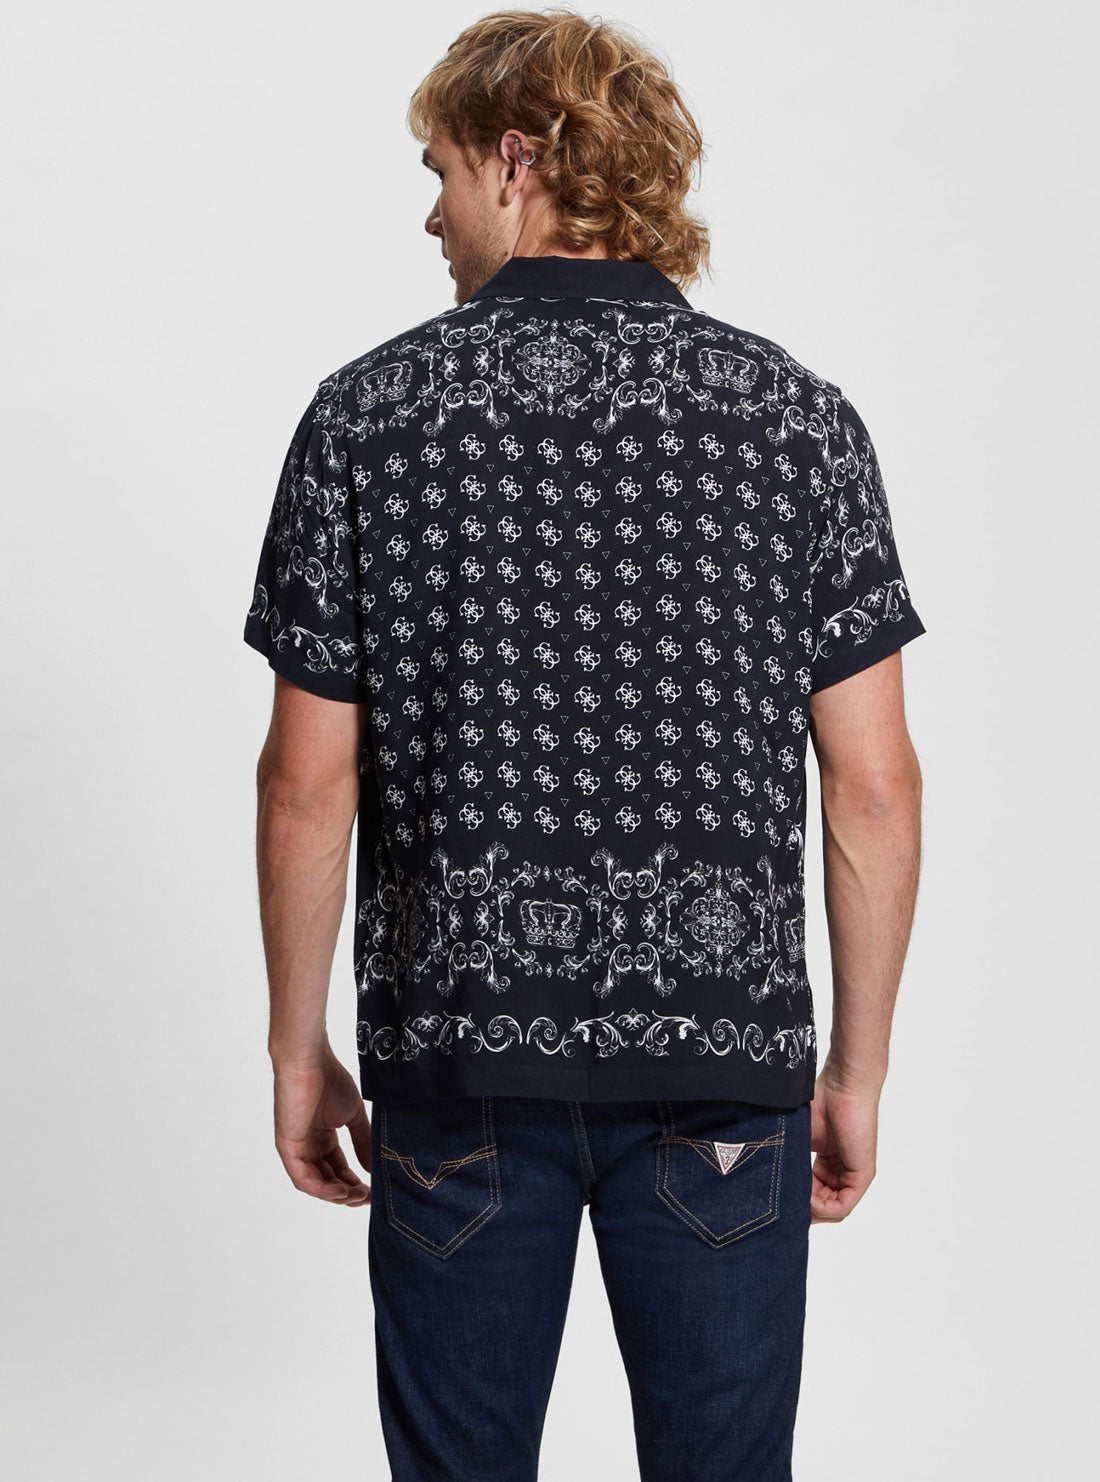 GUESS Eco Black Royal Print Short Sleeve Shirt back view